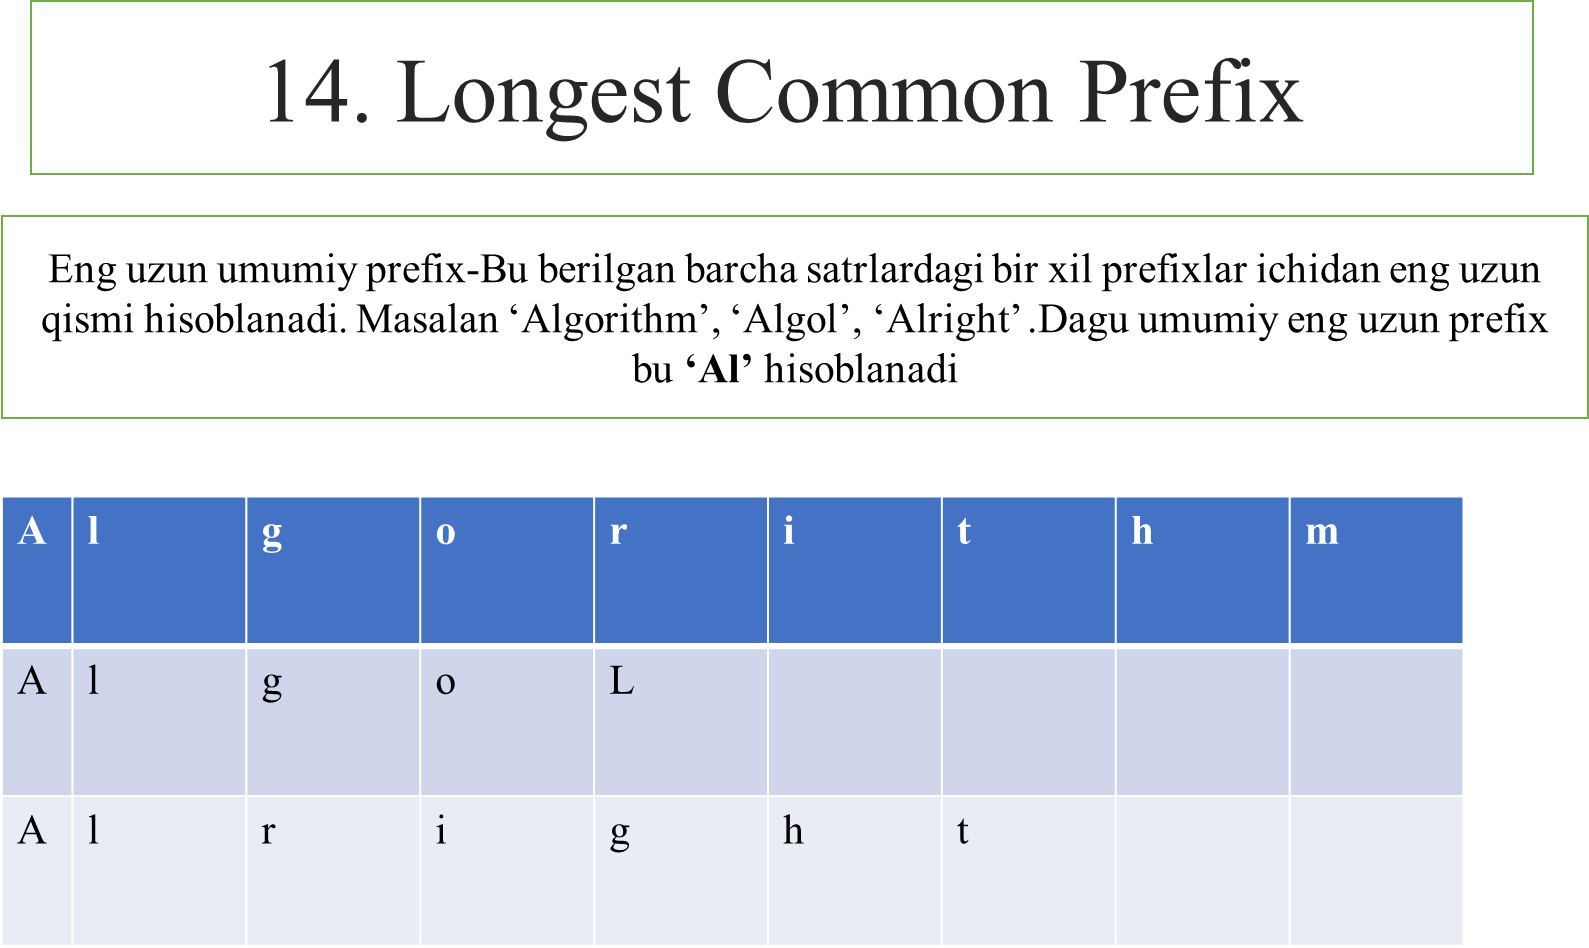 Longest common